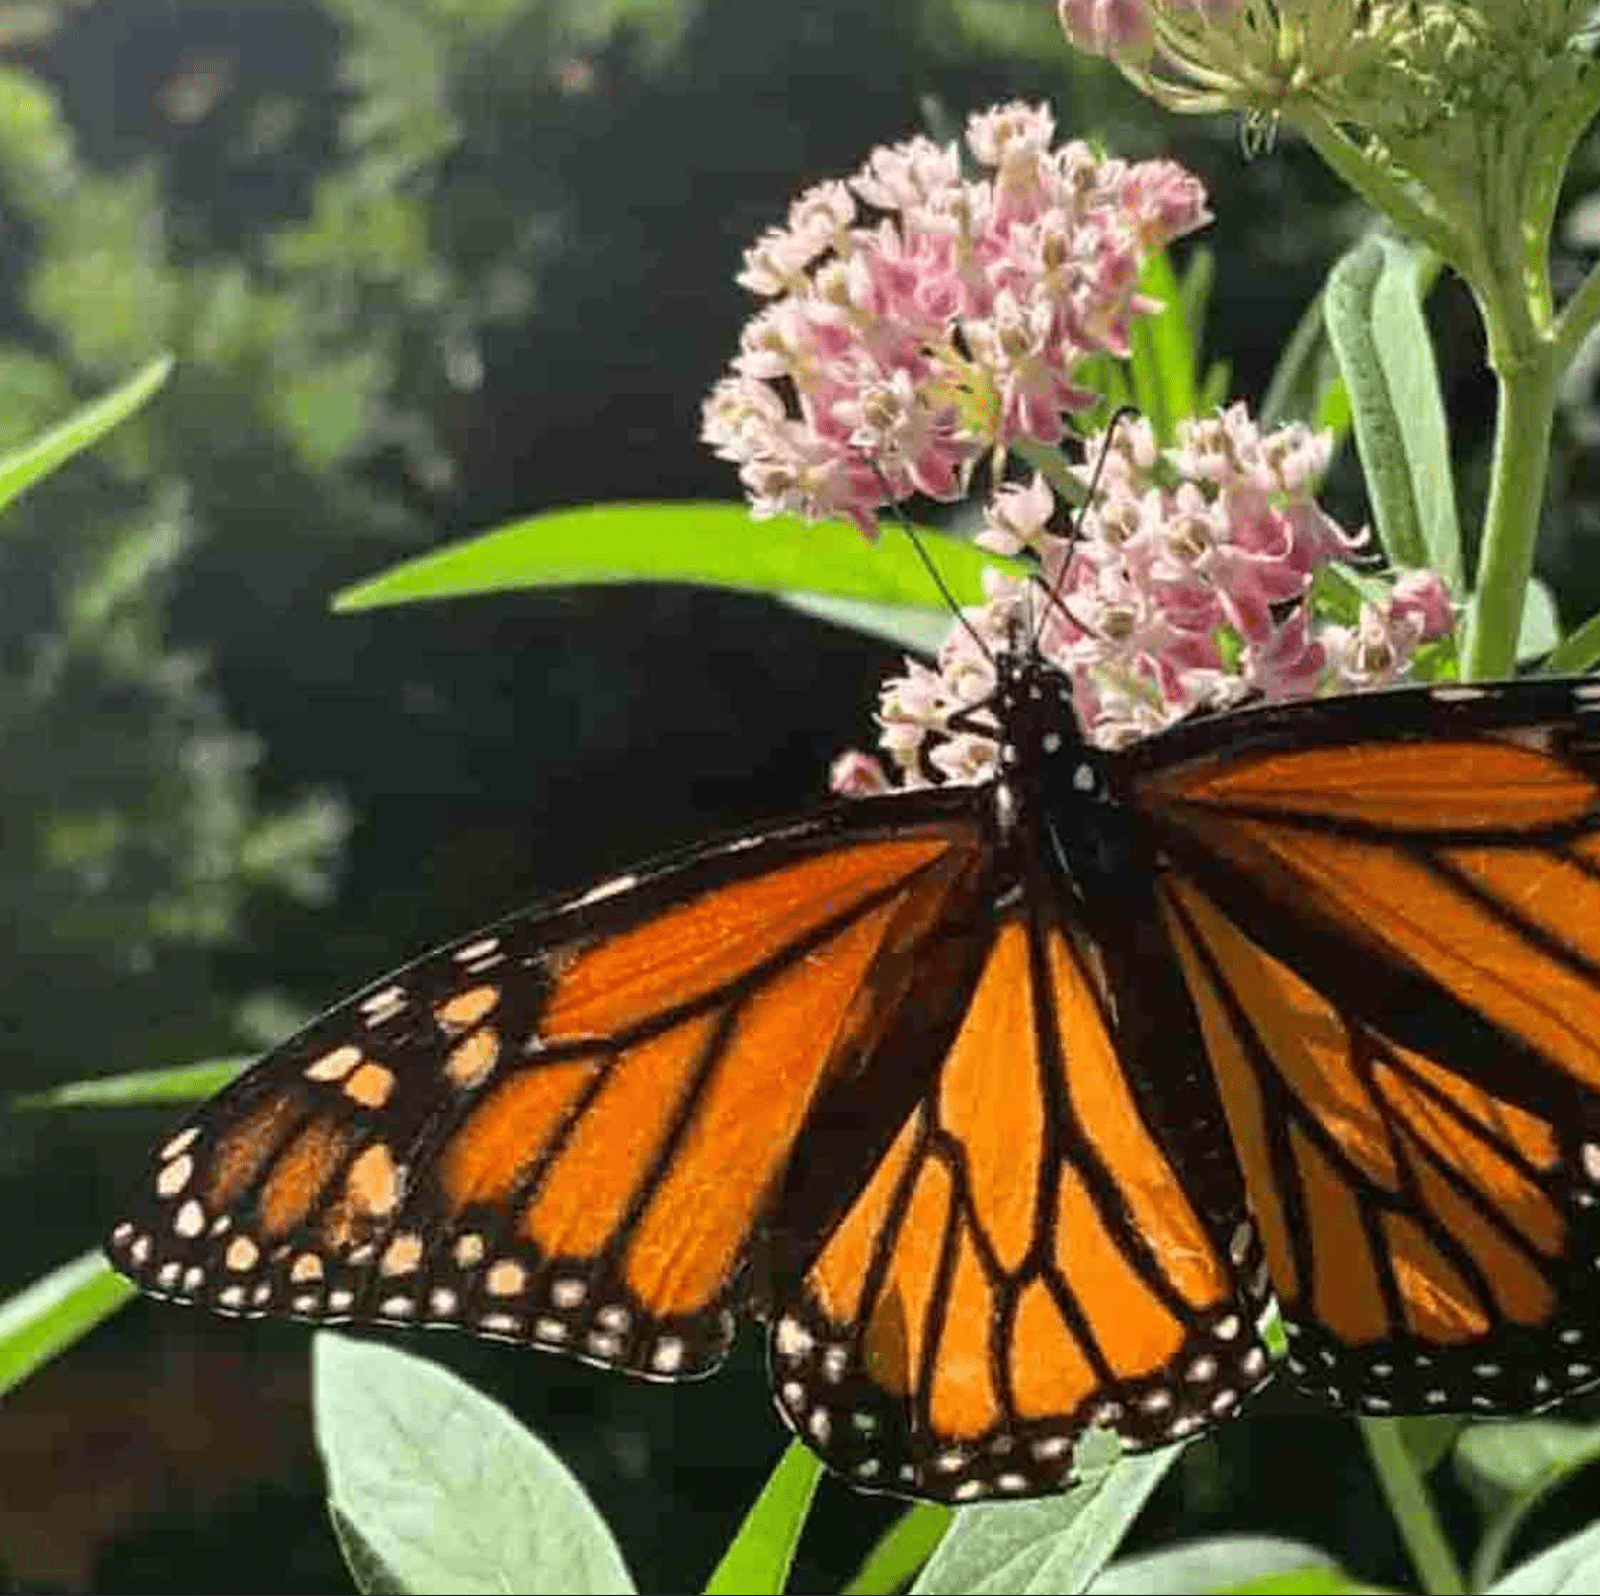 Imagem em JPEG compactada de uma borboleta-monarca